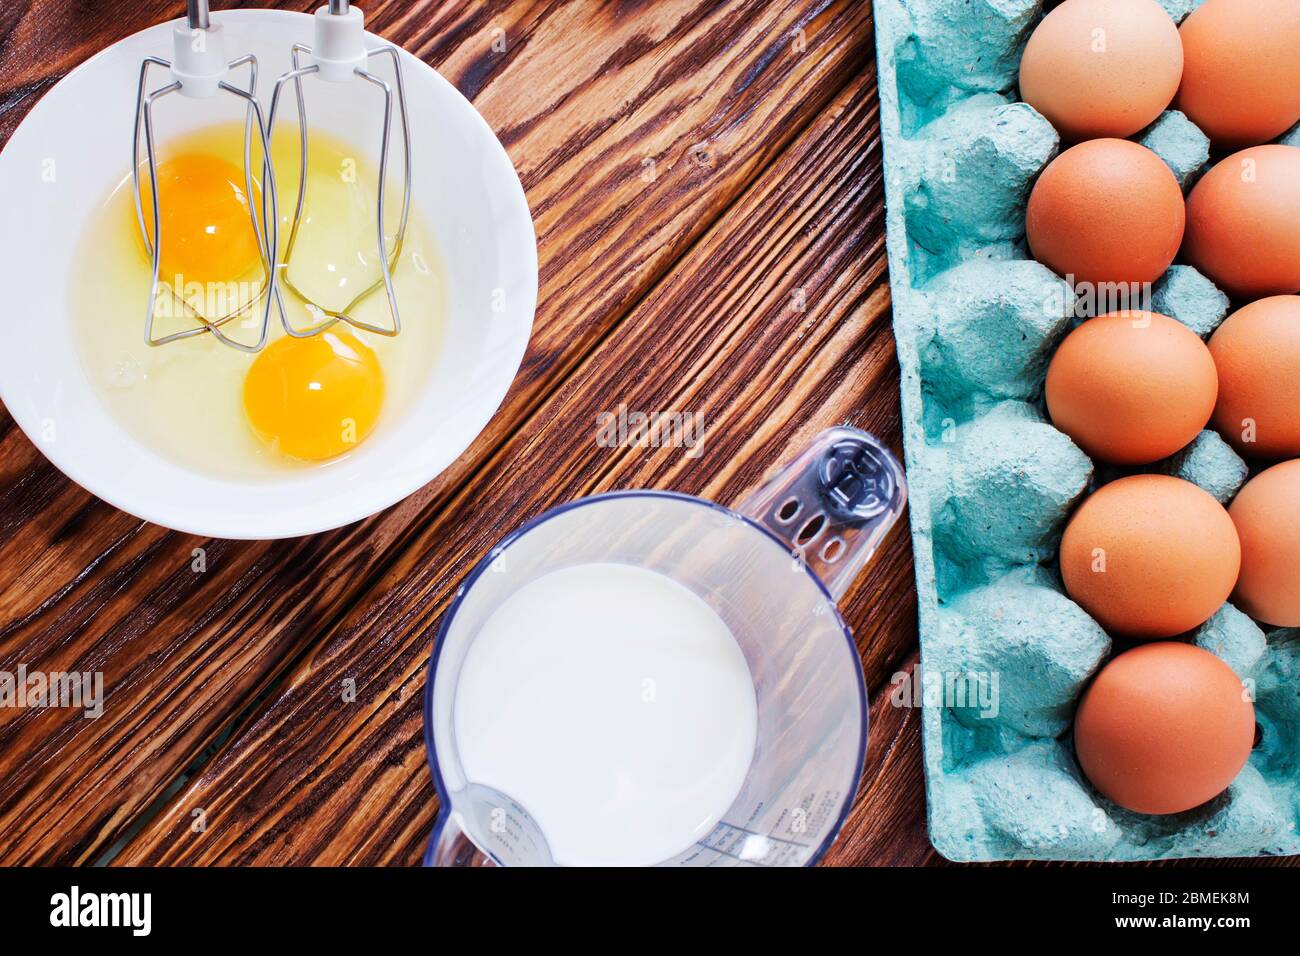 huevos y harina, productos para hornear pastel Fotografía de stock - Alamy